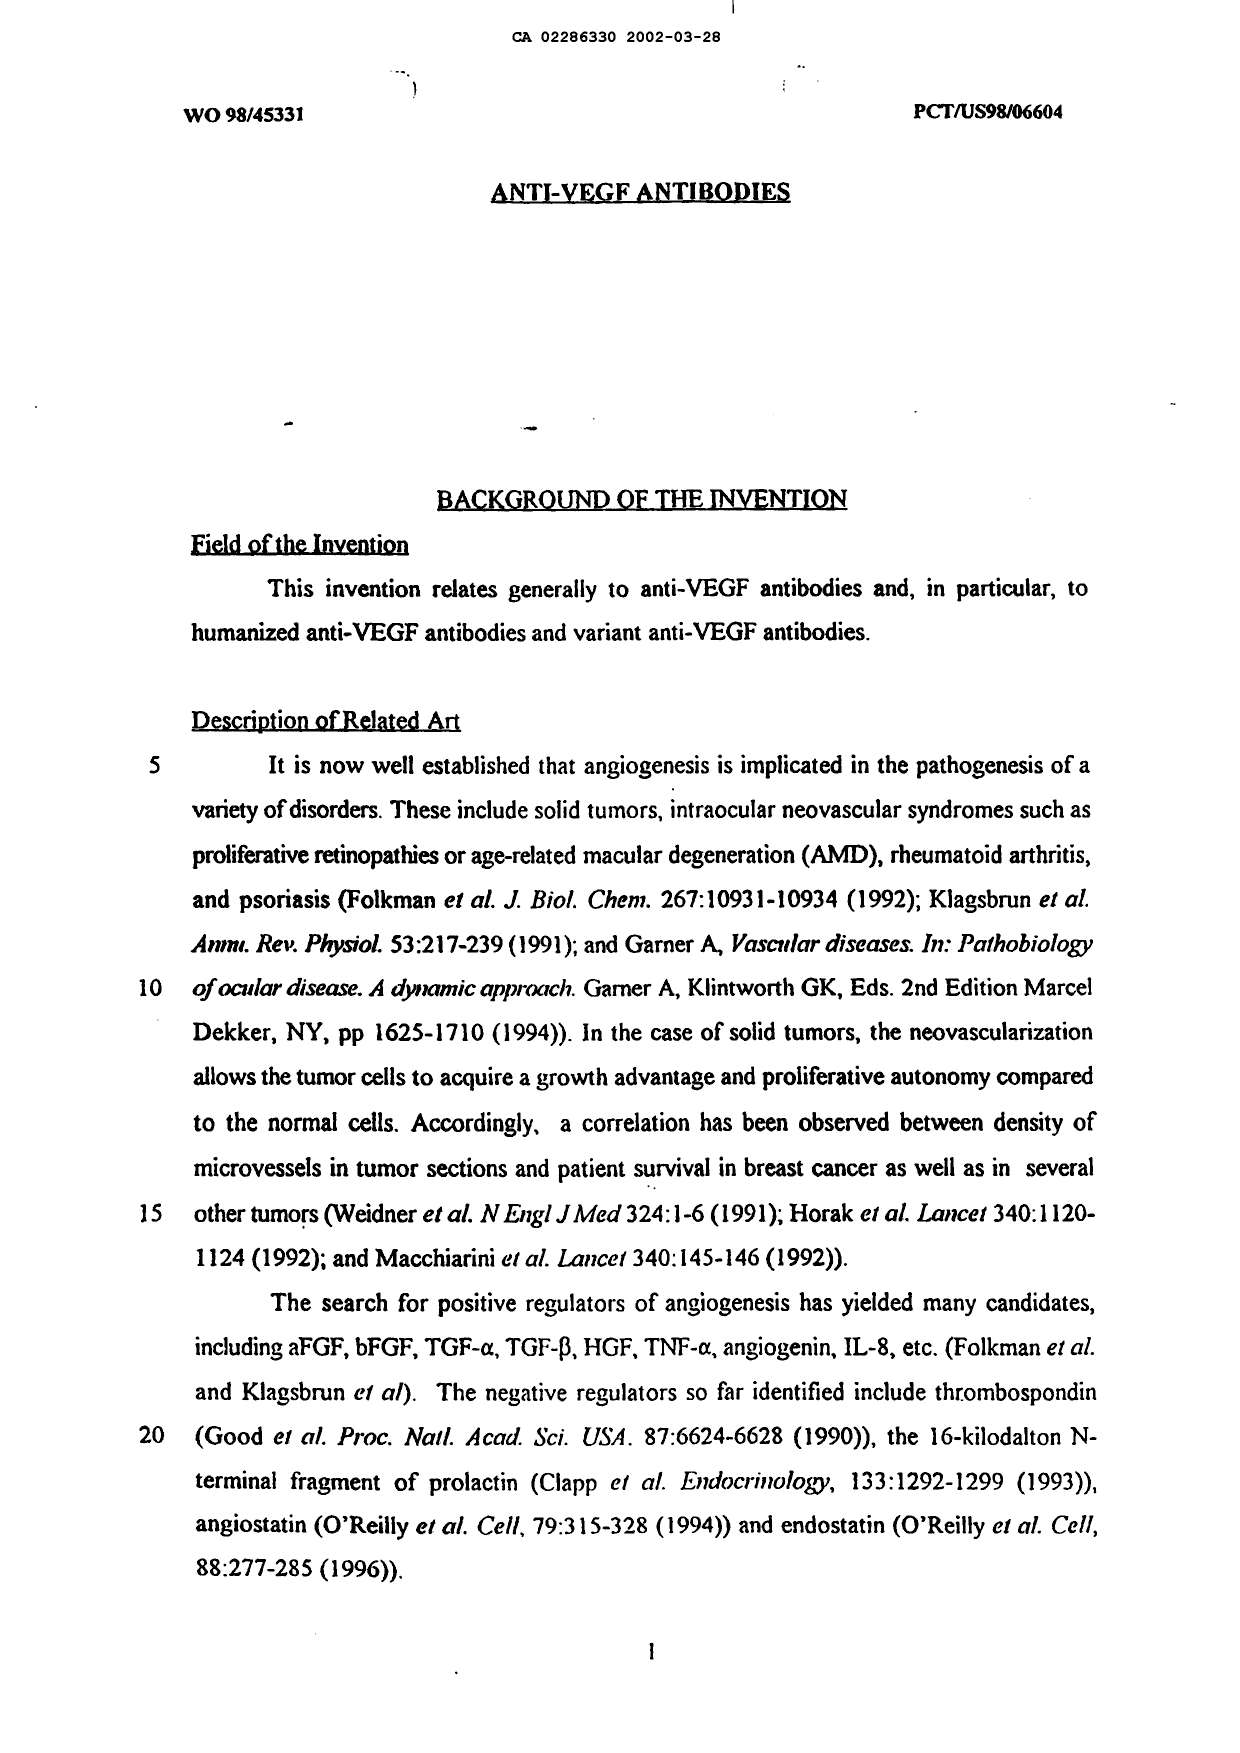 Canadian Patent Document 2286330. Description 20020328. Image 1 of 127